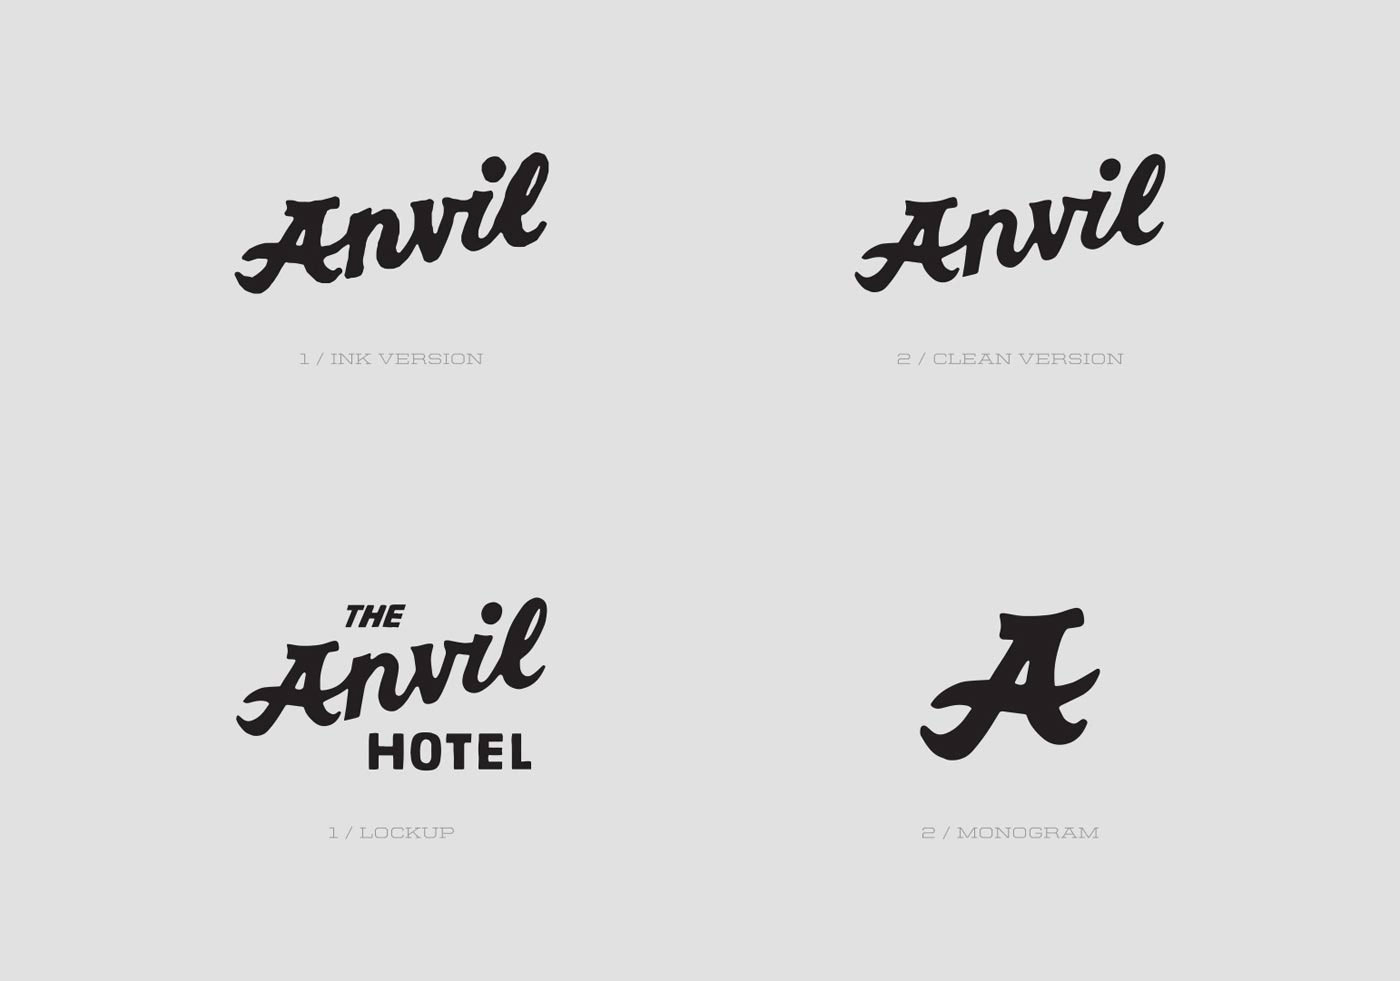 Anvil Hotel Brand Identity Spotlight